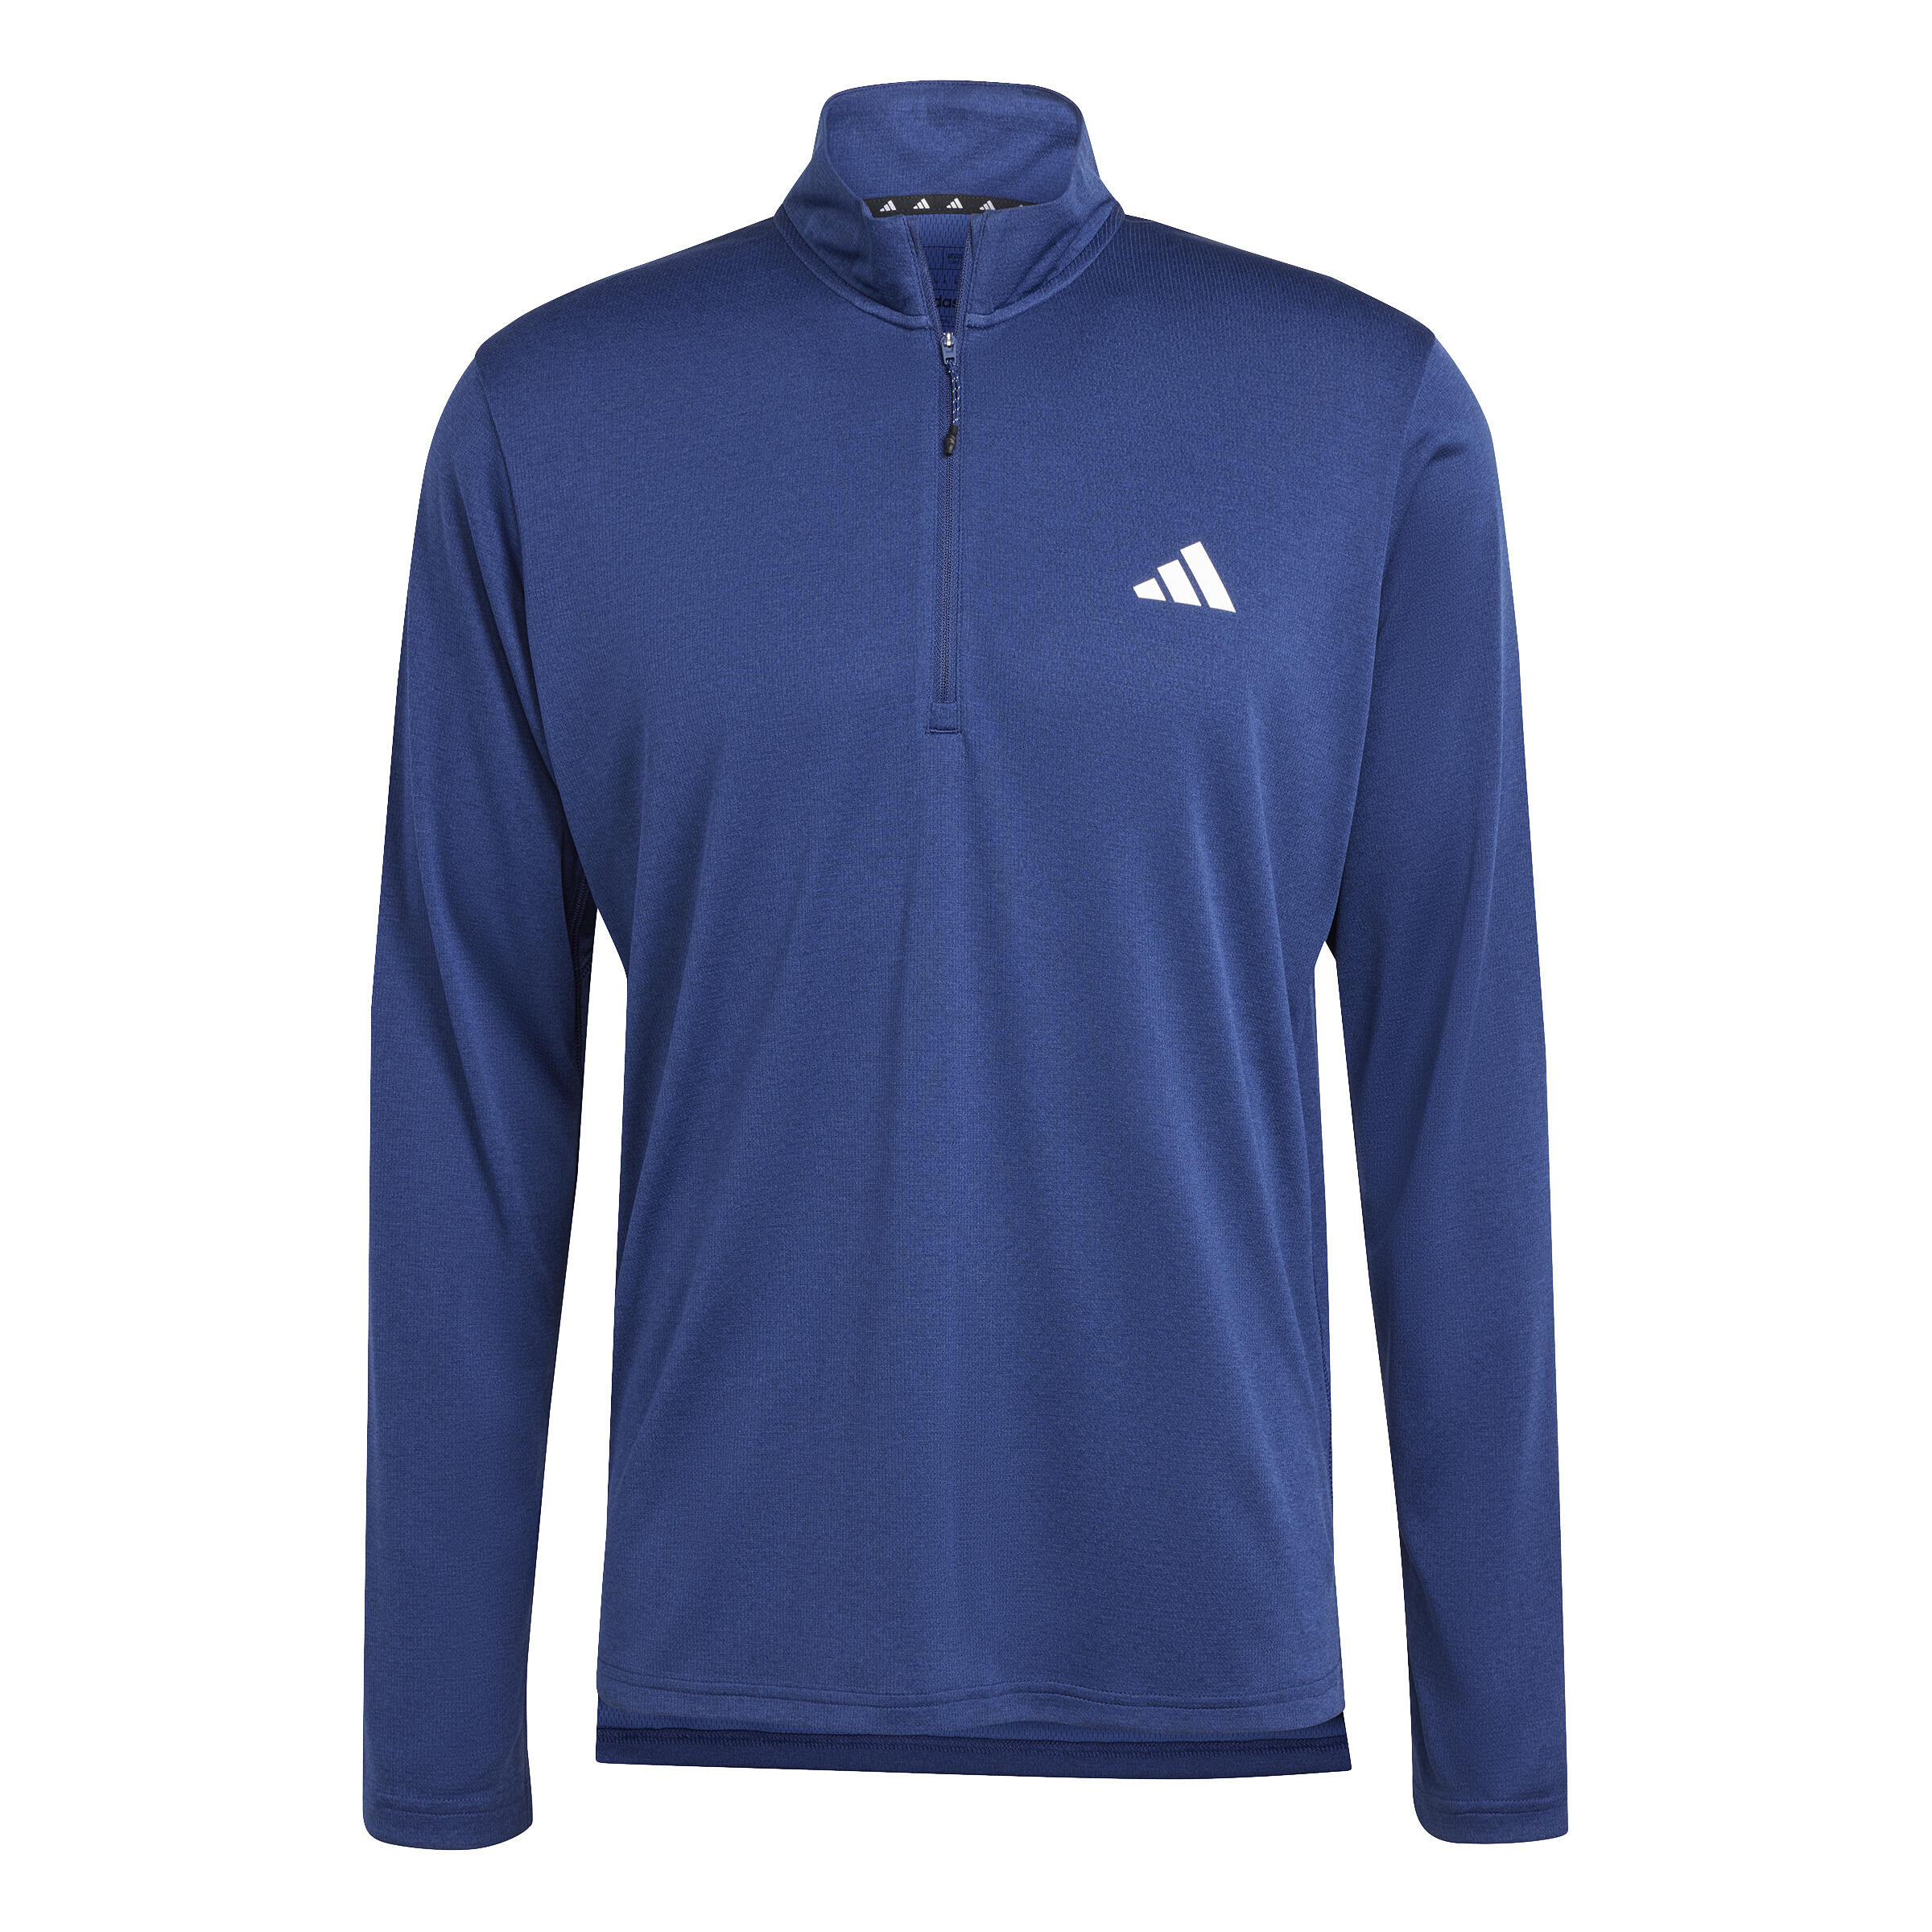 Mens Cardio Fitness Sweatshirt with Zip-Up Collar - Blue 7/7